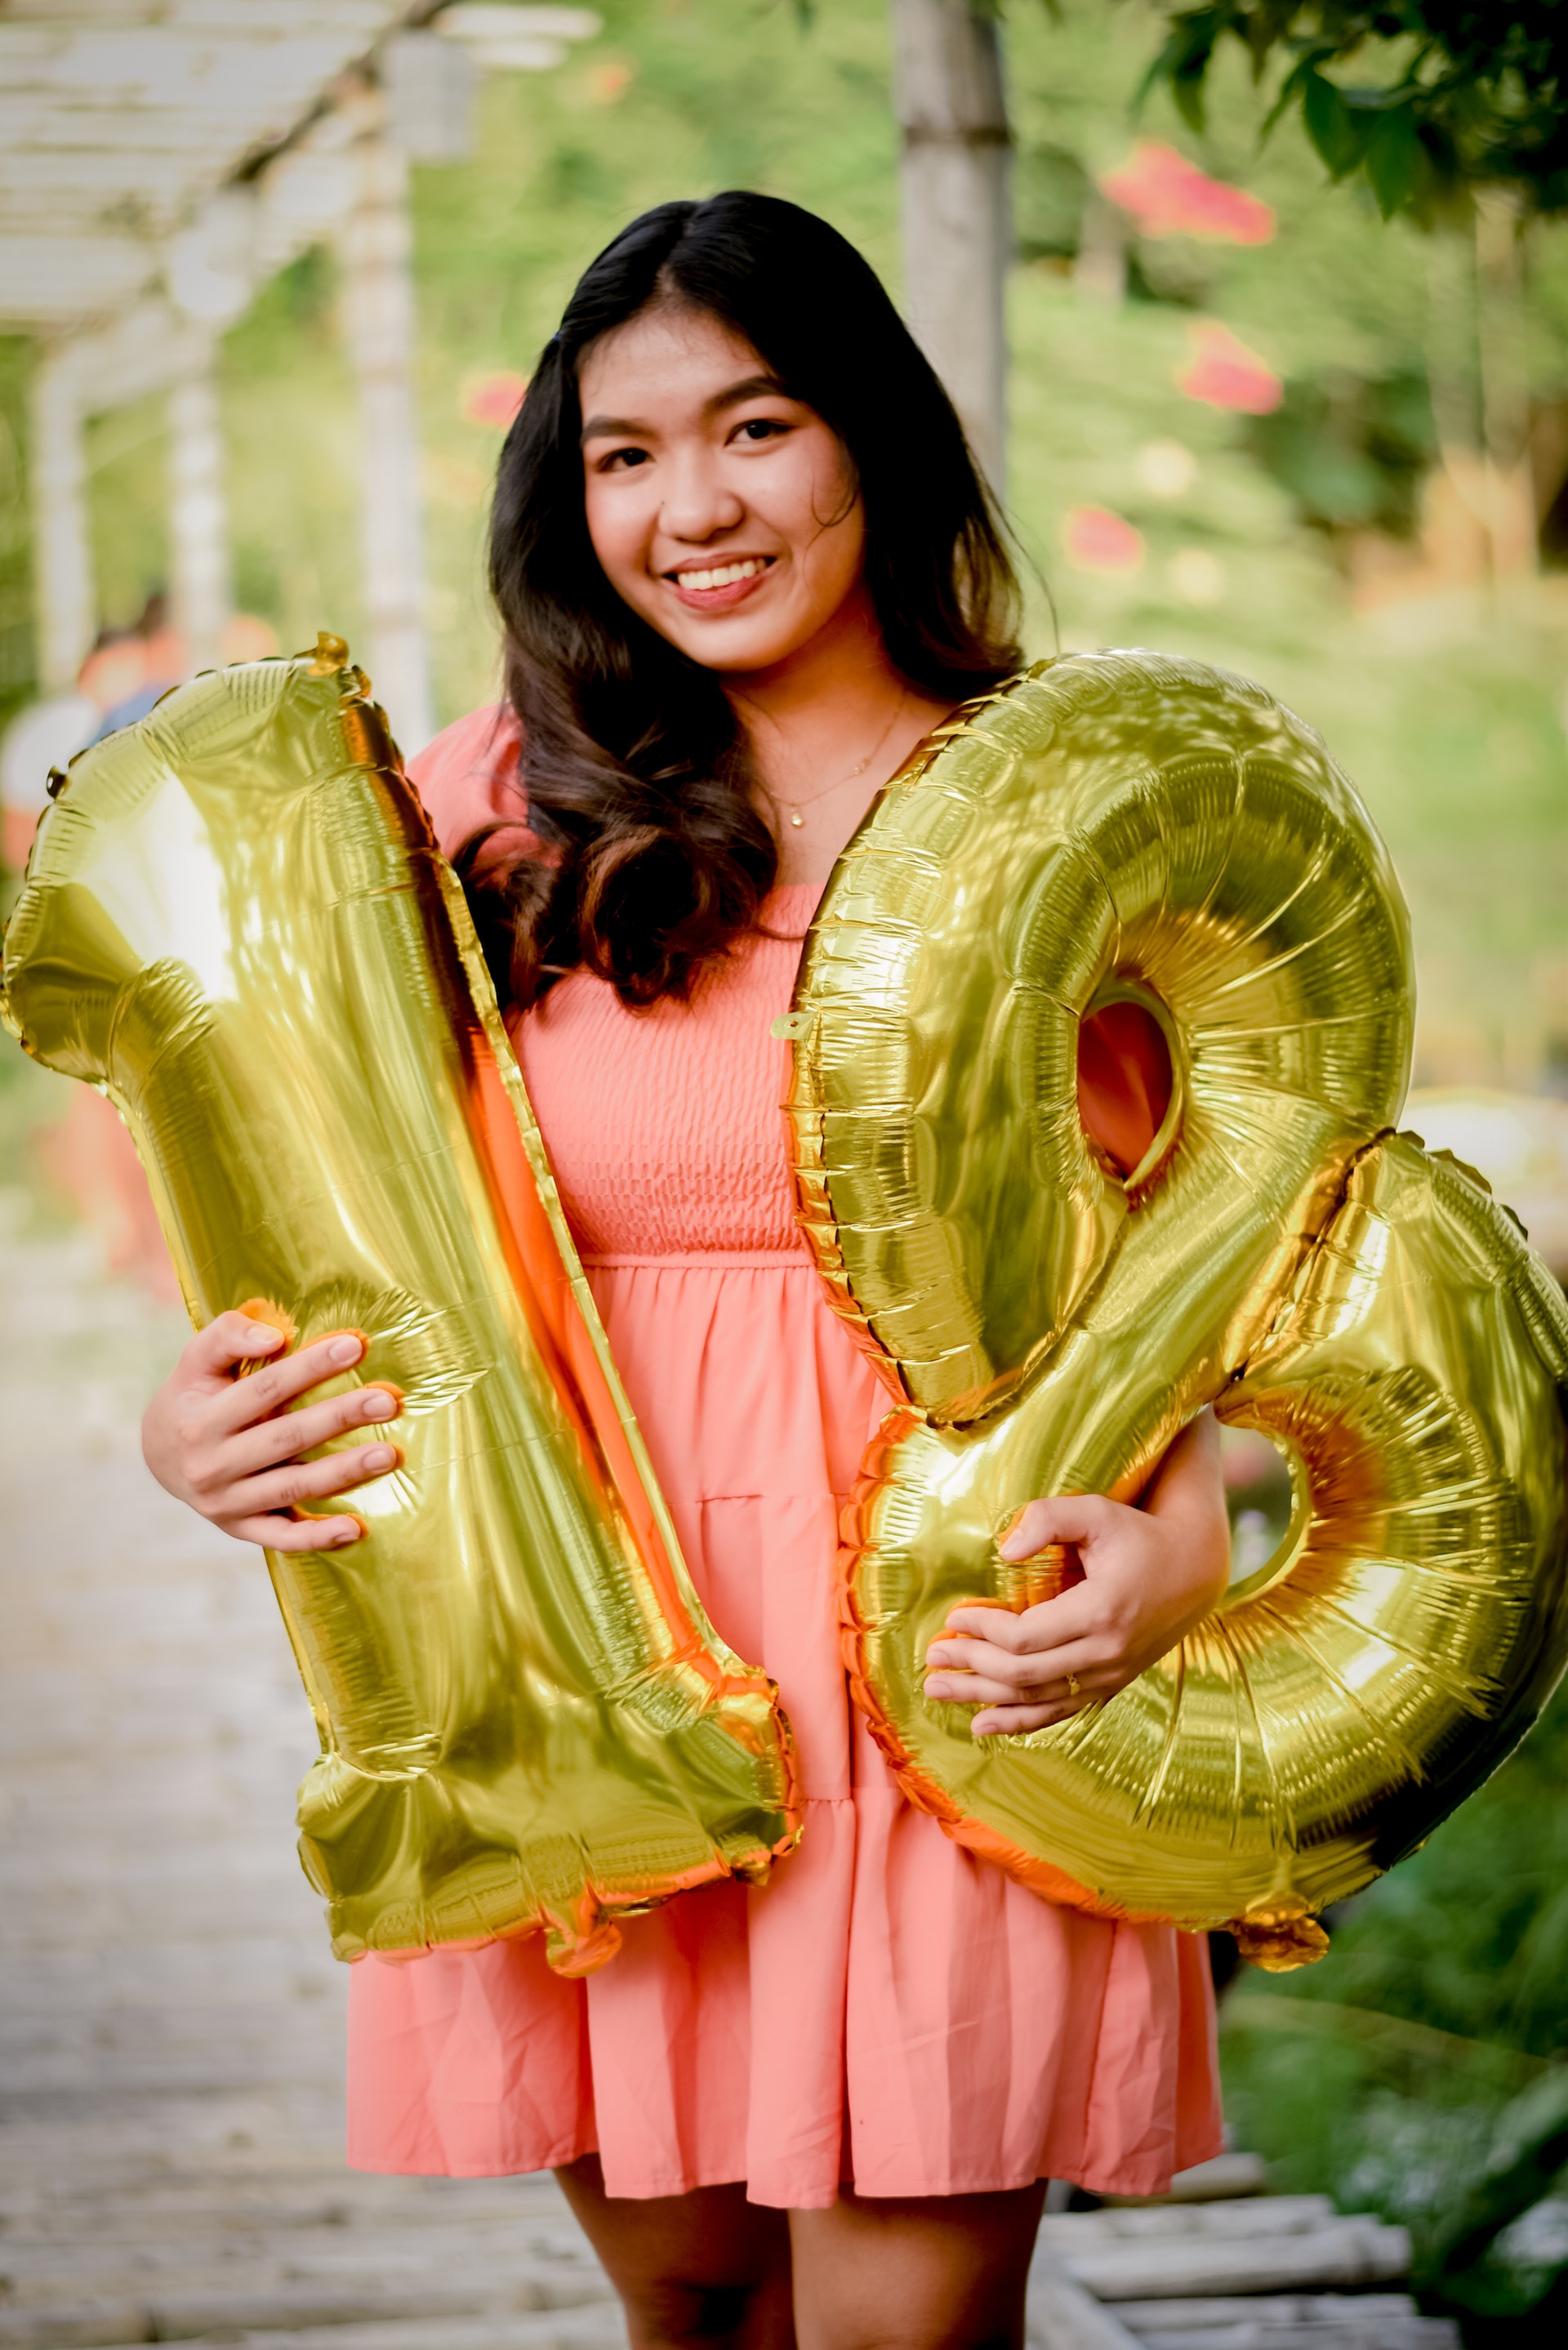 Une jeune fille pose avec des ballons le jour de son 18e anniversaire | Source : Pexels